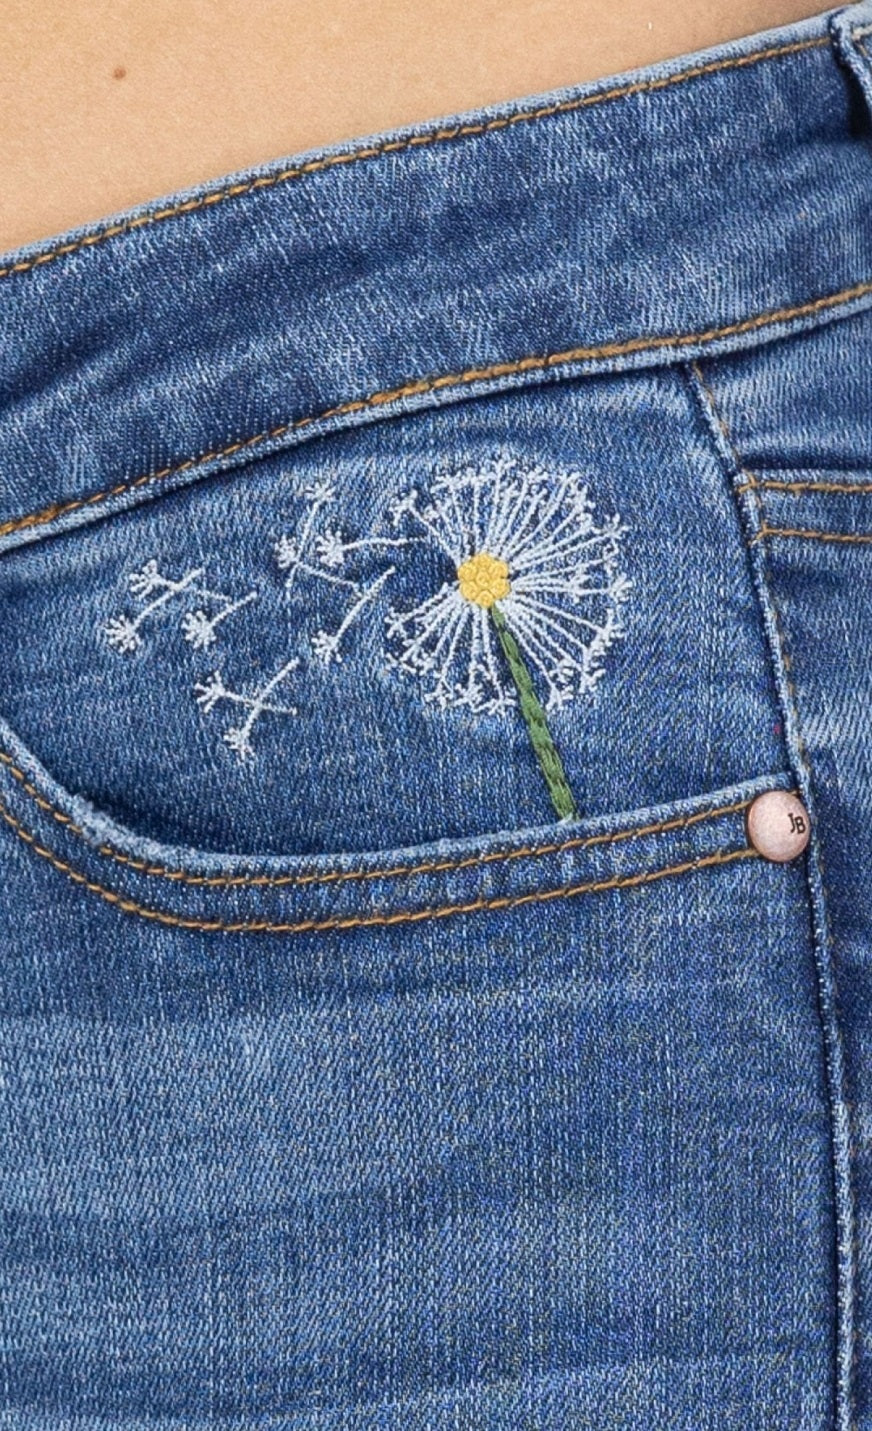 Judy Blue Hi-waisted dandelion embroidery skinny